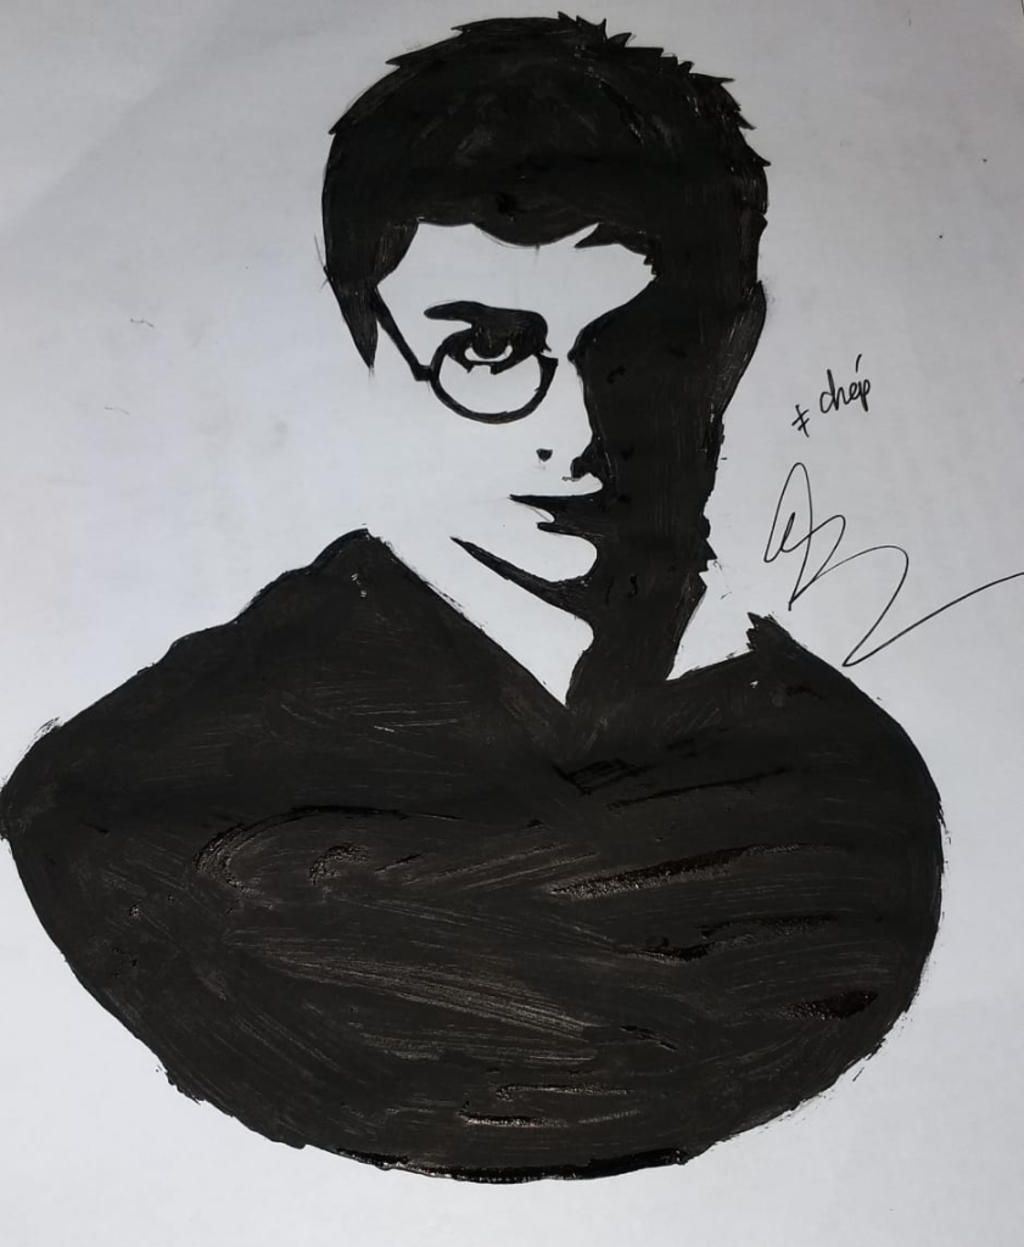 Vẽ Giúp Mình Chân Dung Trắng Đen Harry Potter Ạ Và Kể Tên 1 Số Idol Nhạc  Họa Vẽ Chân Dung Đẹp Đây Là Trang Mình Vẽ Nè :3 Các Bạn Nhận